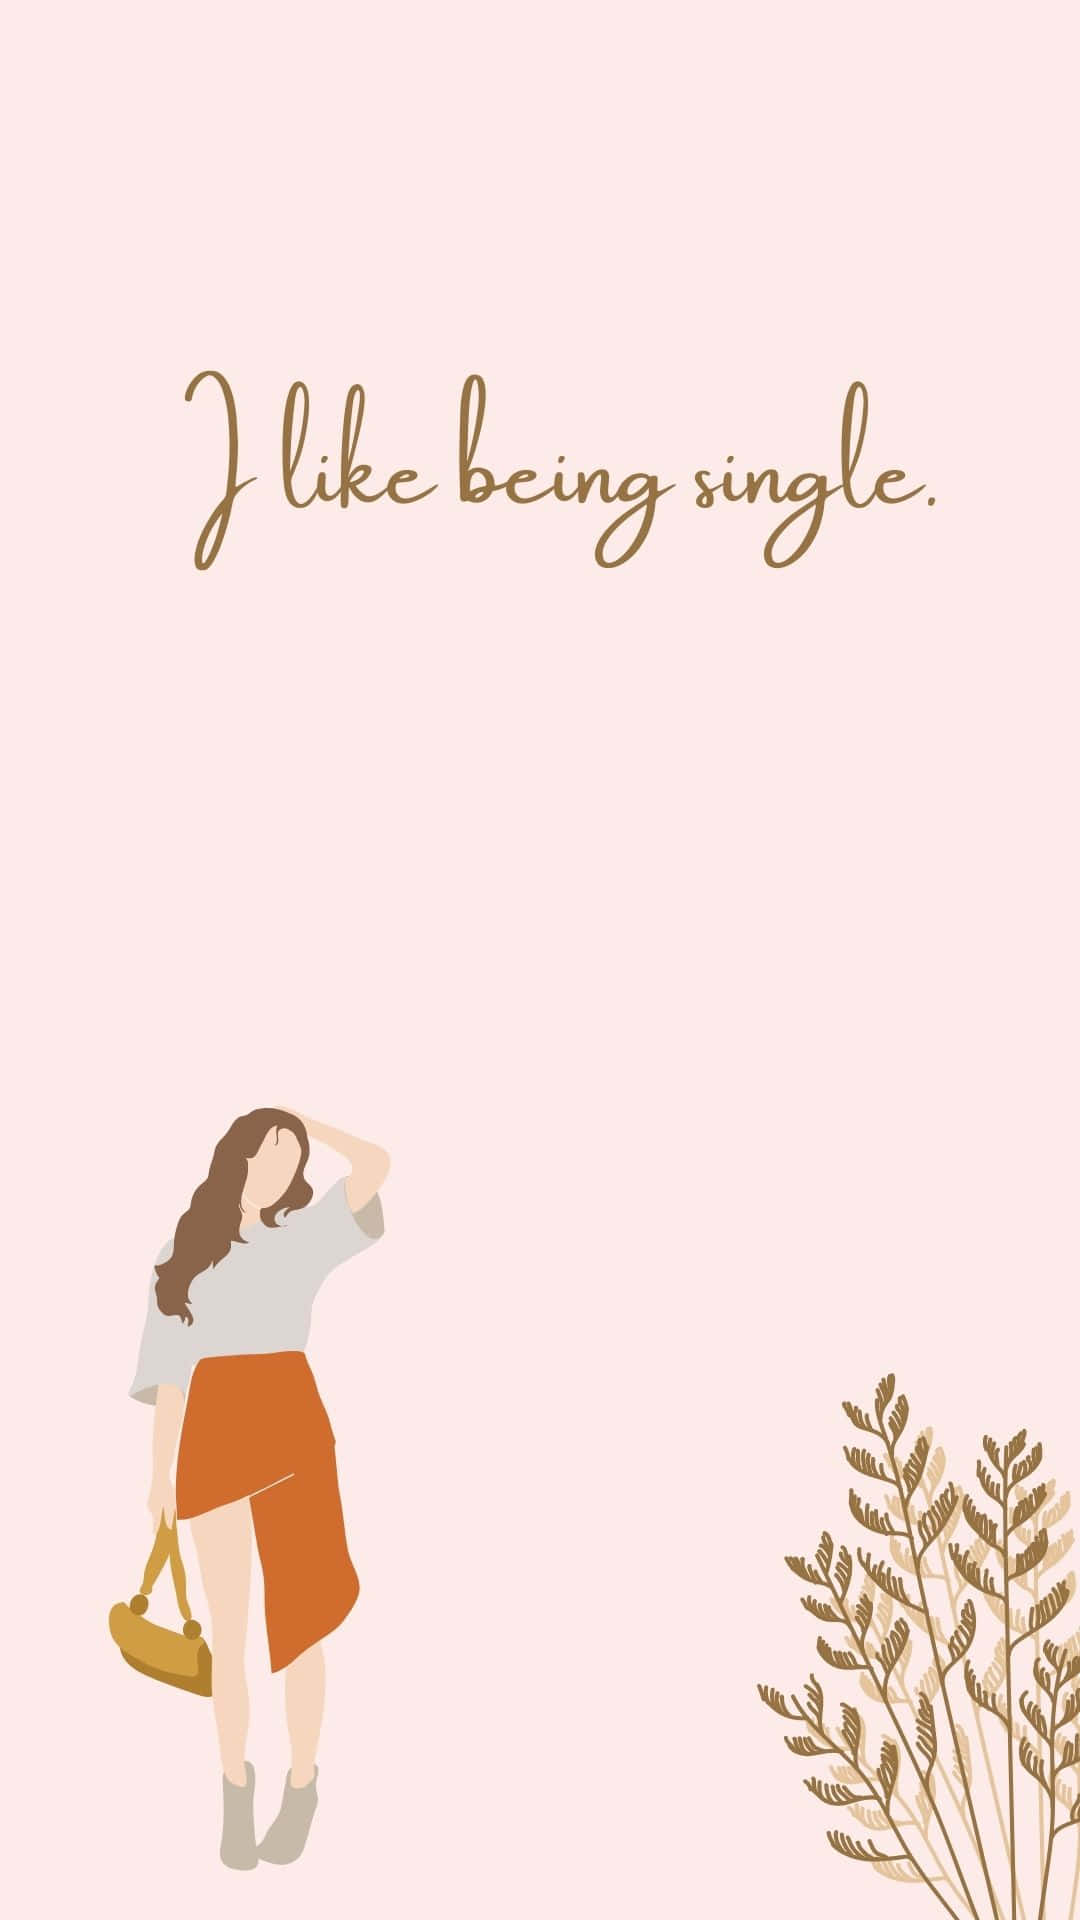 I Like Being Single - Illustration